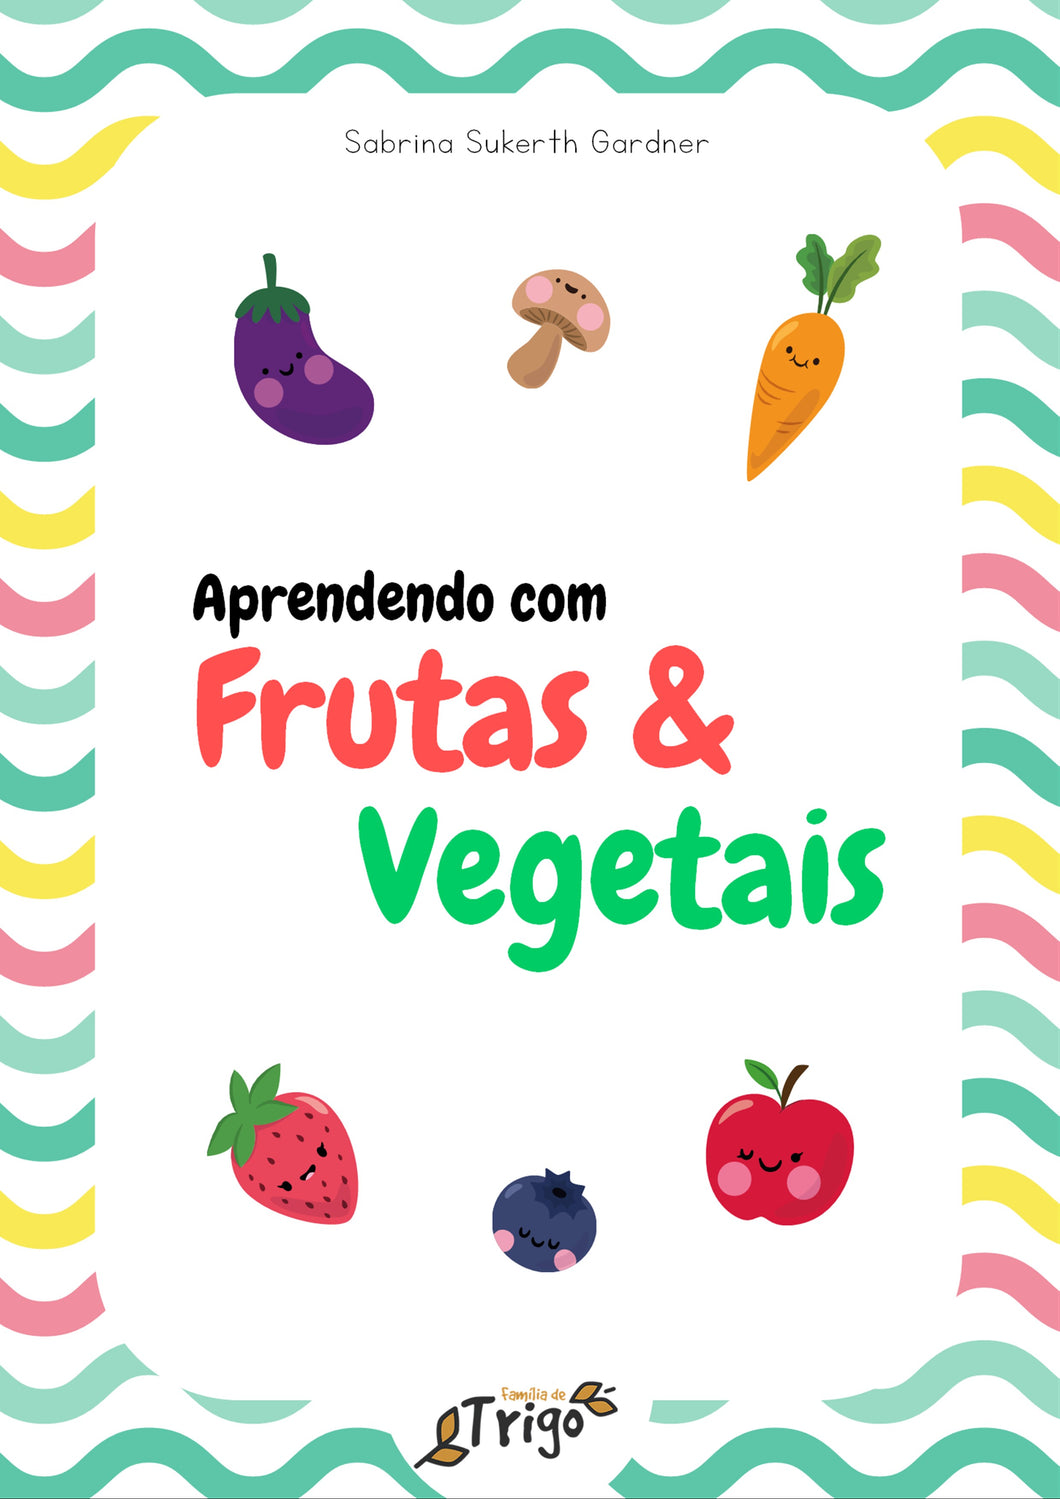 Aprendendo com frutas e vegetais